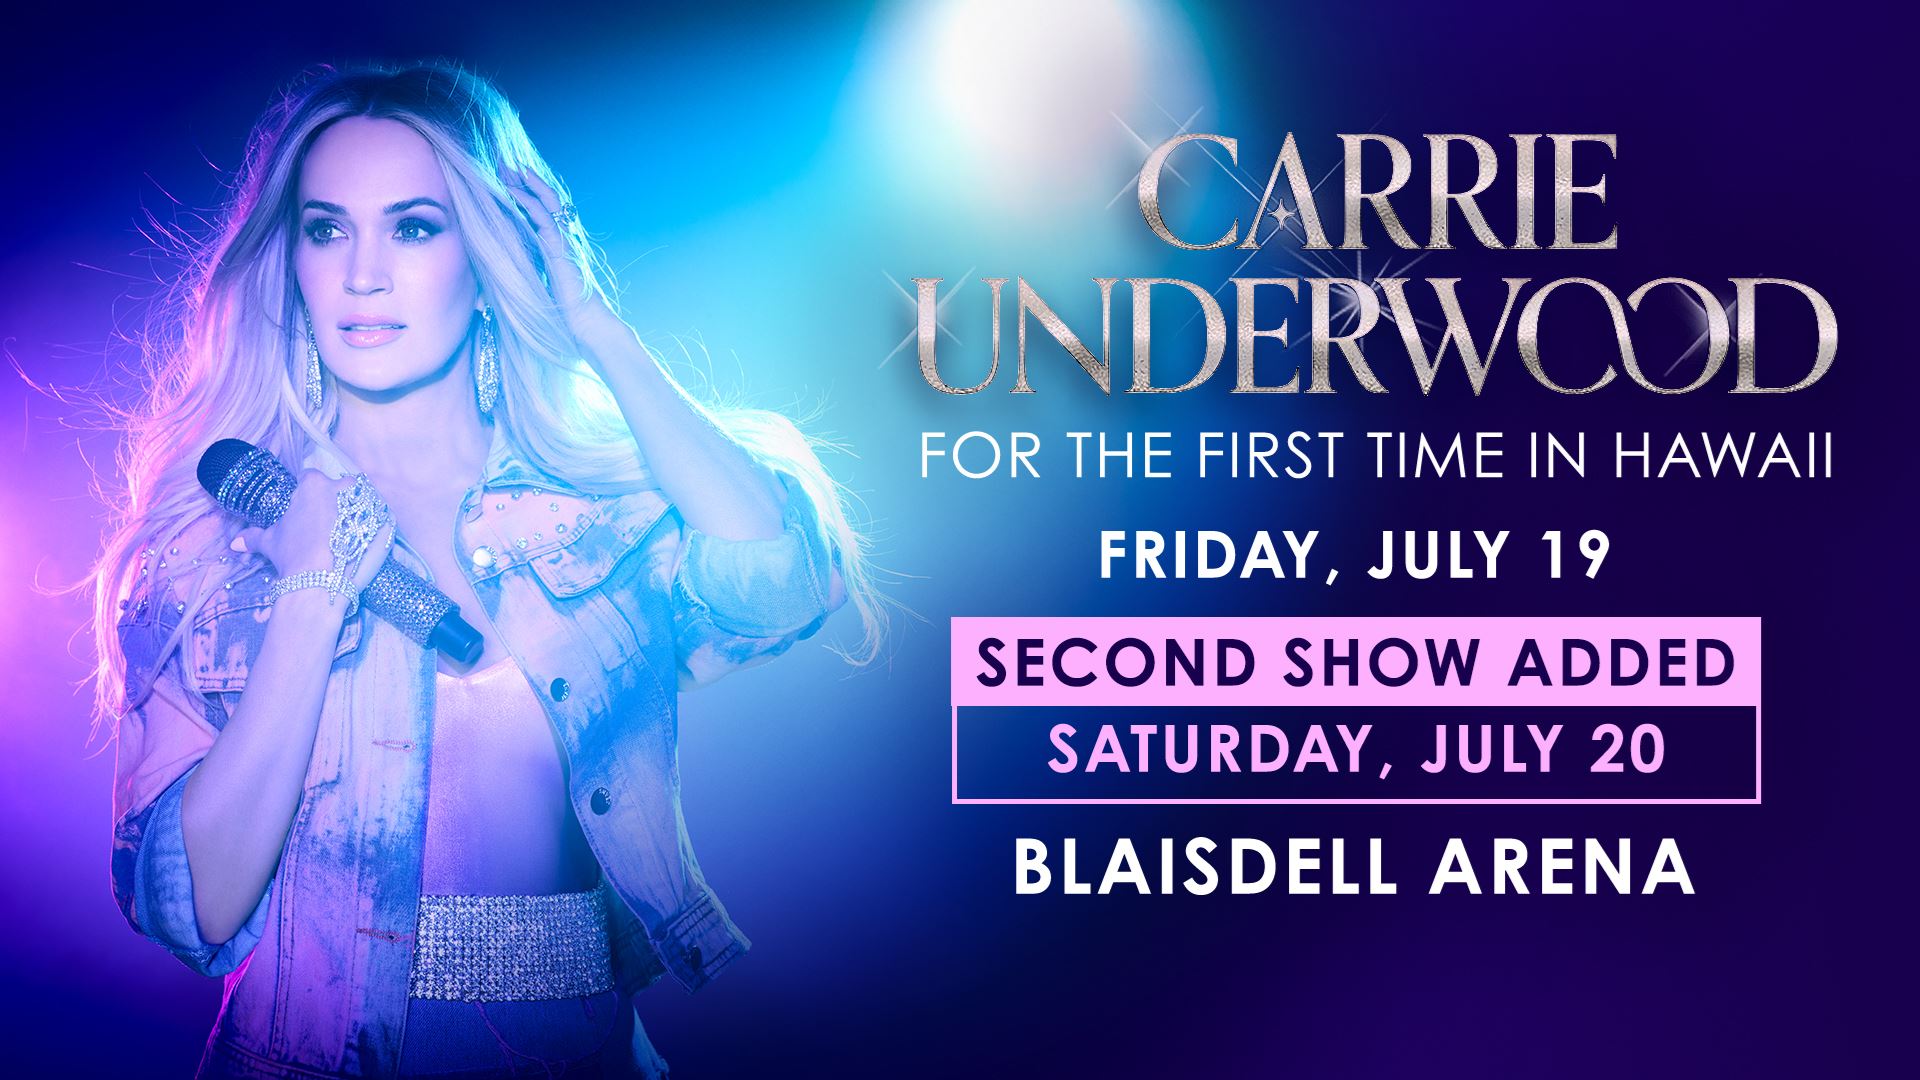 Carrie Underwood Premium Ticket Giveaway